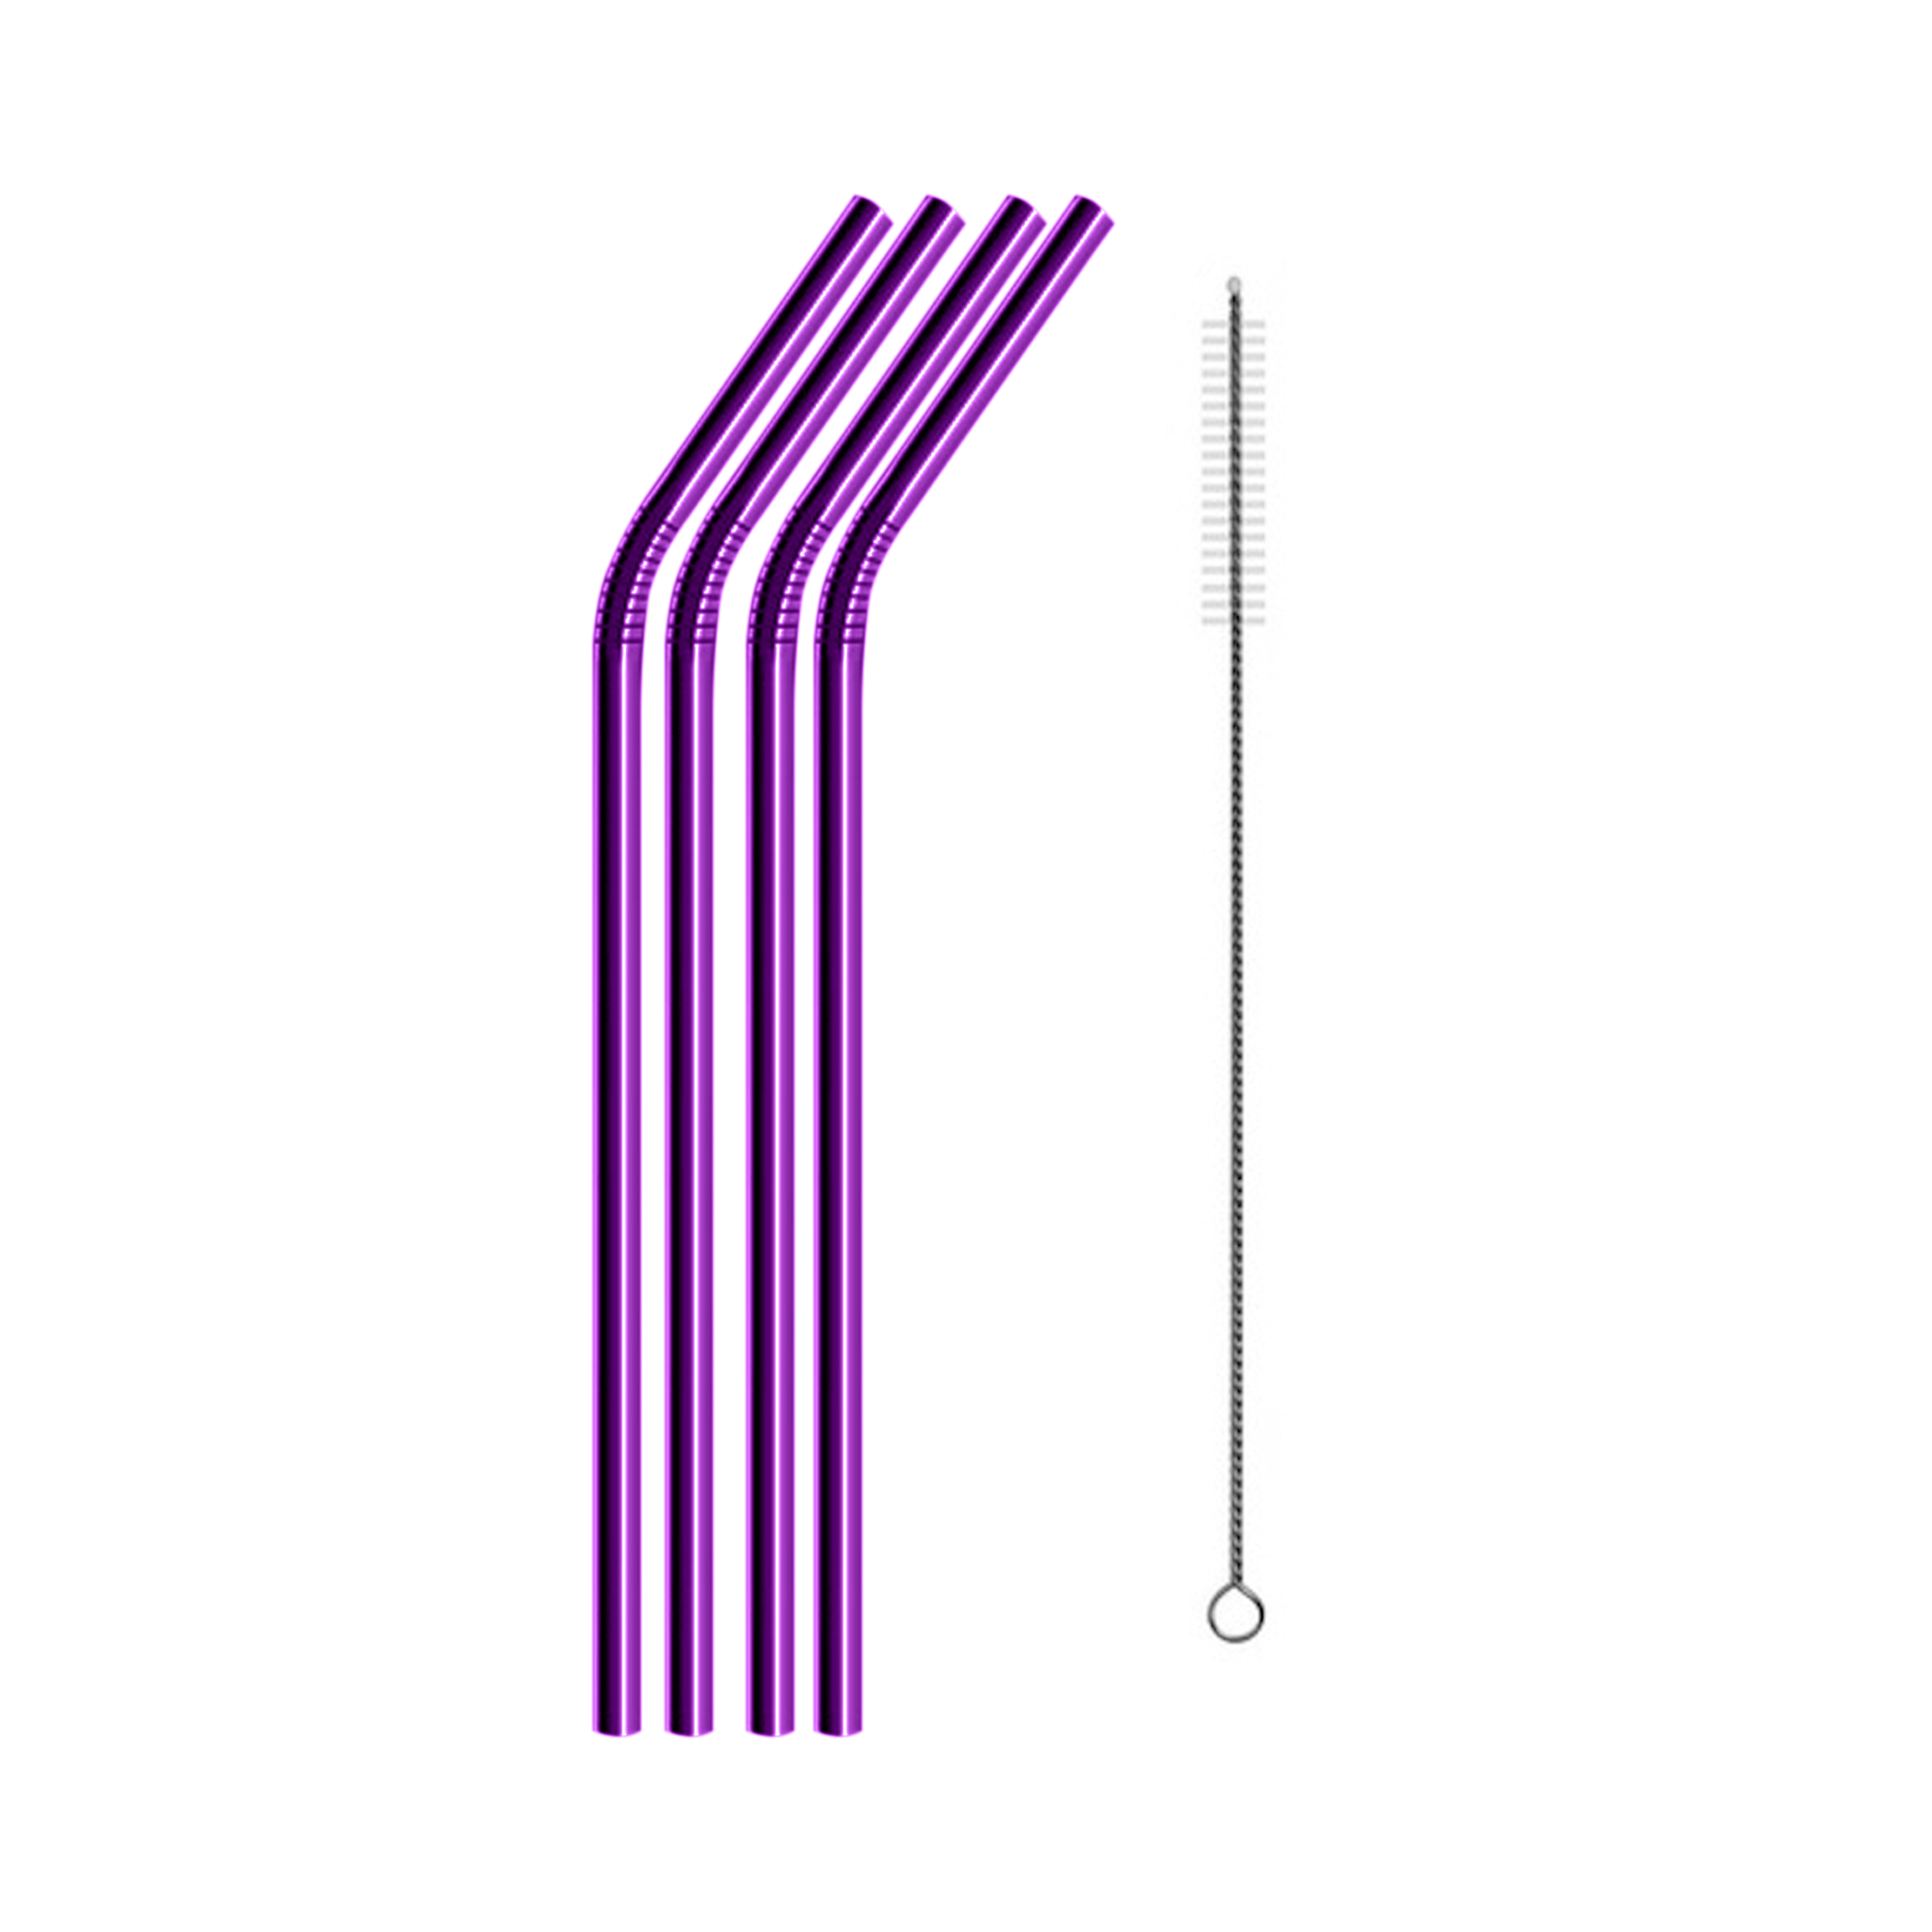 SWZLE Stainless Steel Drinking Straws - Purple (4 Pack)